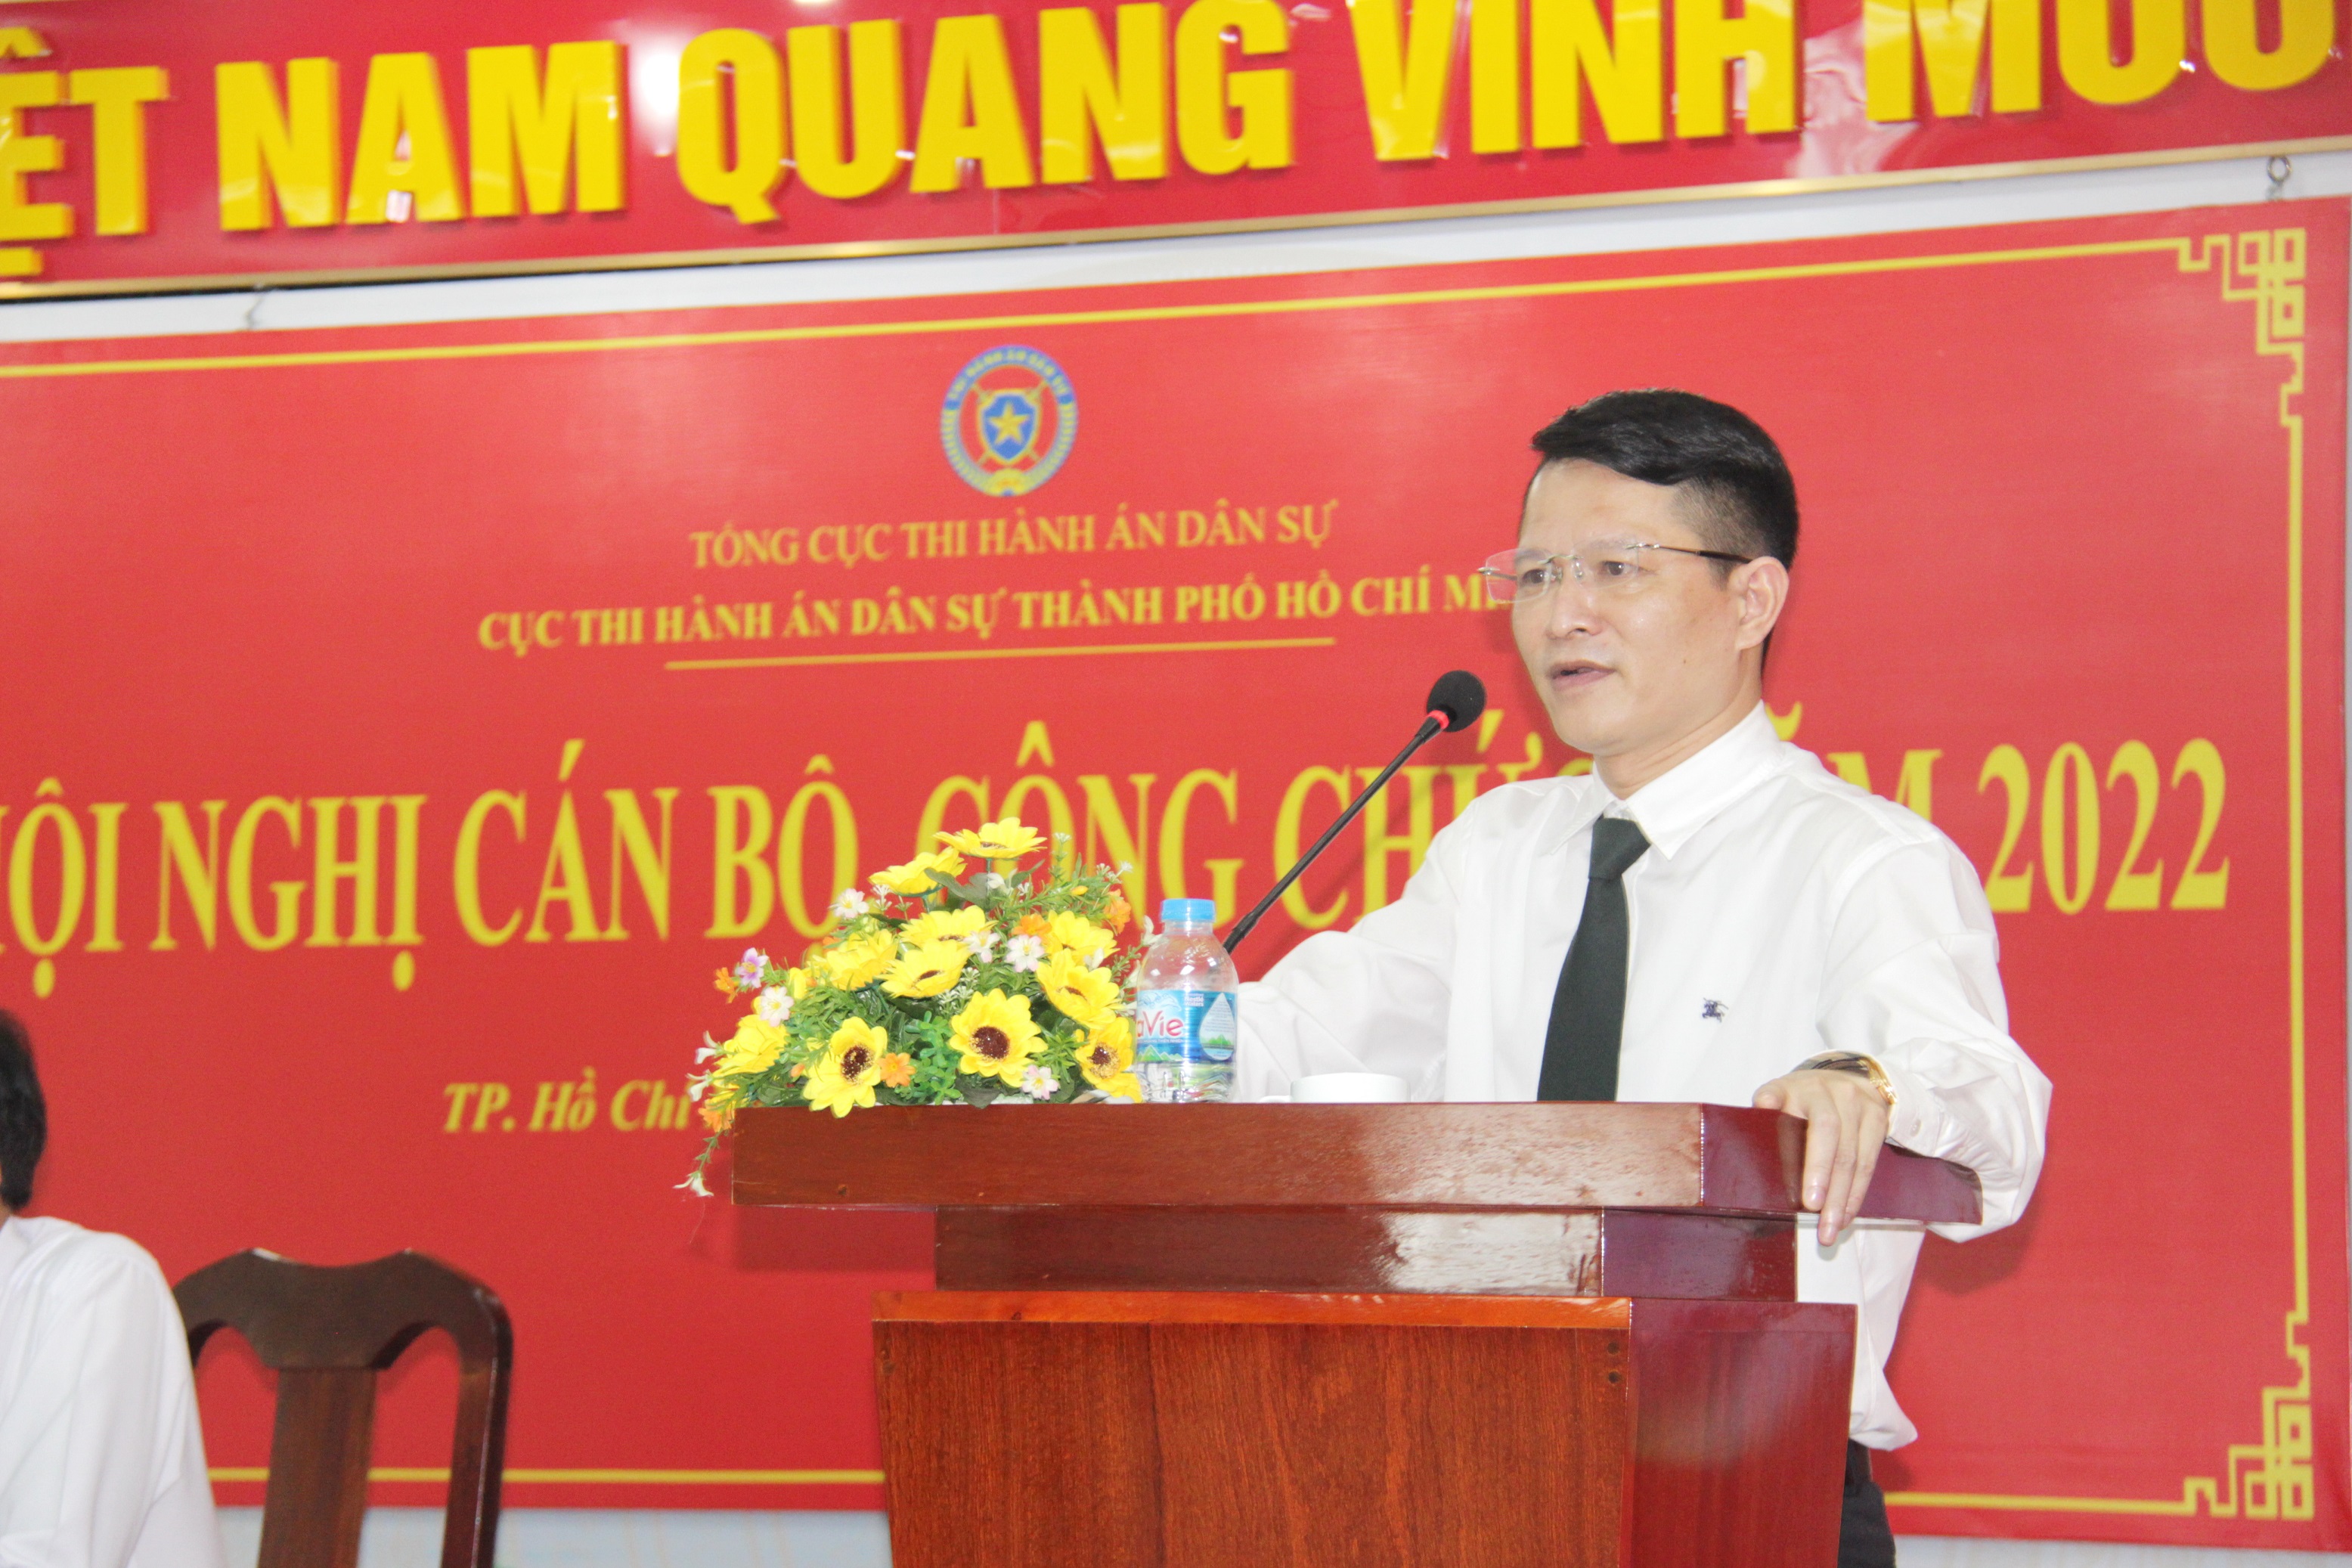 Quyền cục trưởng Nguyễn Văn Hòa phát biểu tại Hội nghị cán bộ công chức năm 2022